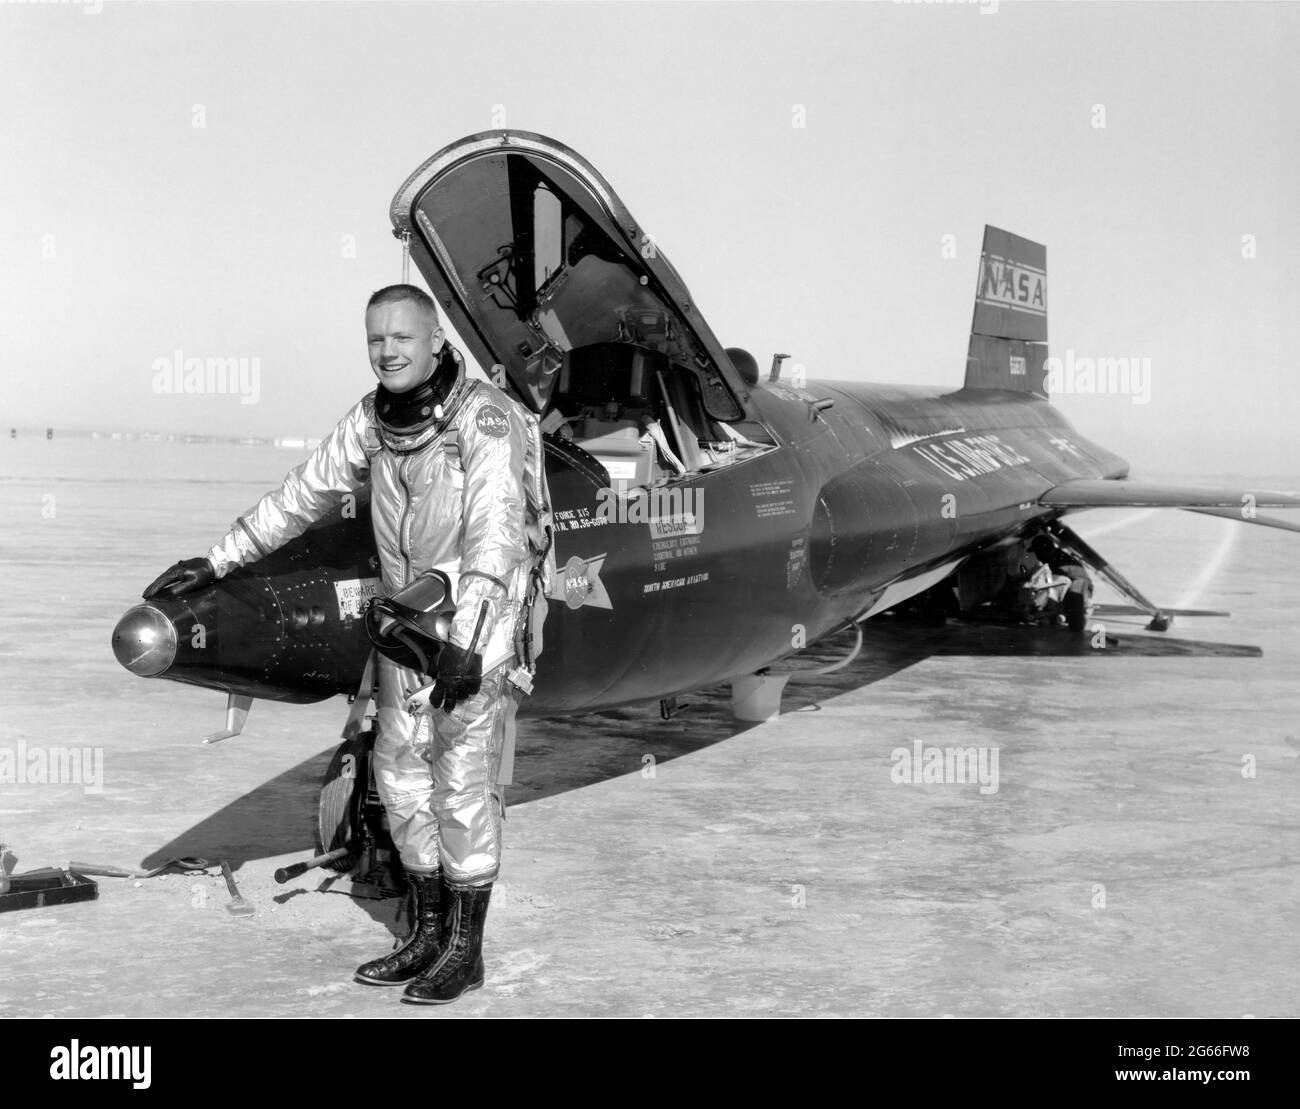 Le pilote de Dryden Neil Armstrong est vu ici à côté du navire X-15 n° 1 (56-6670) après un vol de recherche. Le X-15 était un avion à fusée de 50 pieds de long avec une envergure de 22 pieds. C'était un véhicule en forme de missile avec une queue verticale inhabituelle en forme de coin, des ailes minces et des carénages latéraux uniques qui s'étendaient le long du fuselage. Le X-15 a été utilisé sur une période de près de 10 ans, de juin 1959 à octobre 1968. Il a établi les records de vitesse et d'altitude non officiels du monde. Informations obtenues grâce au programme X-15 très réussi. Banque D'Images